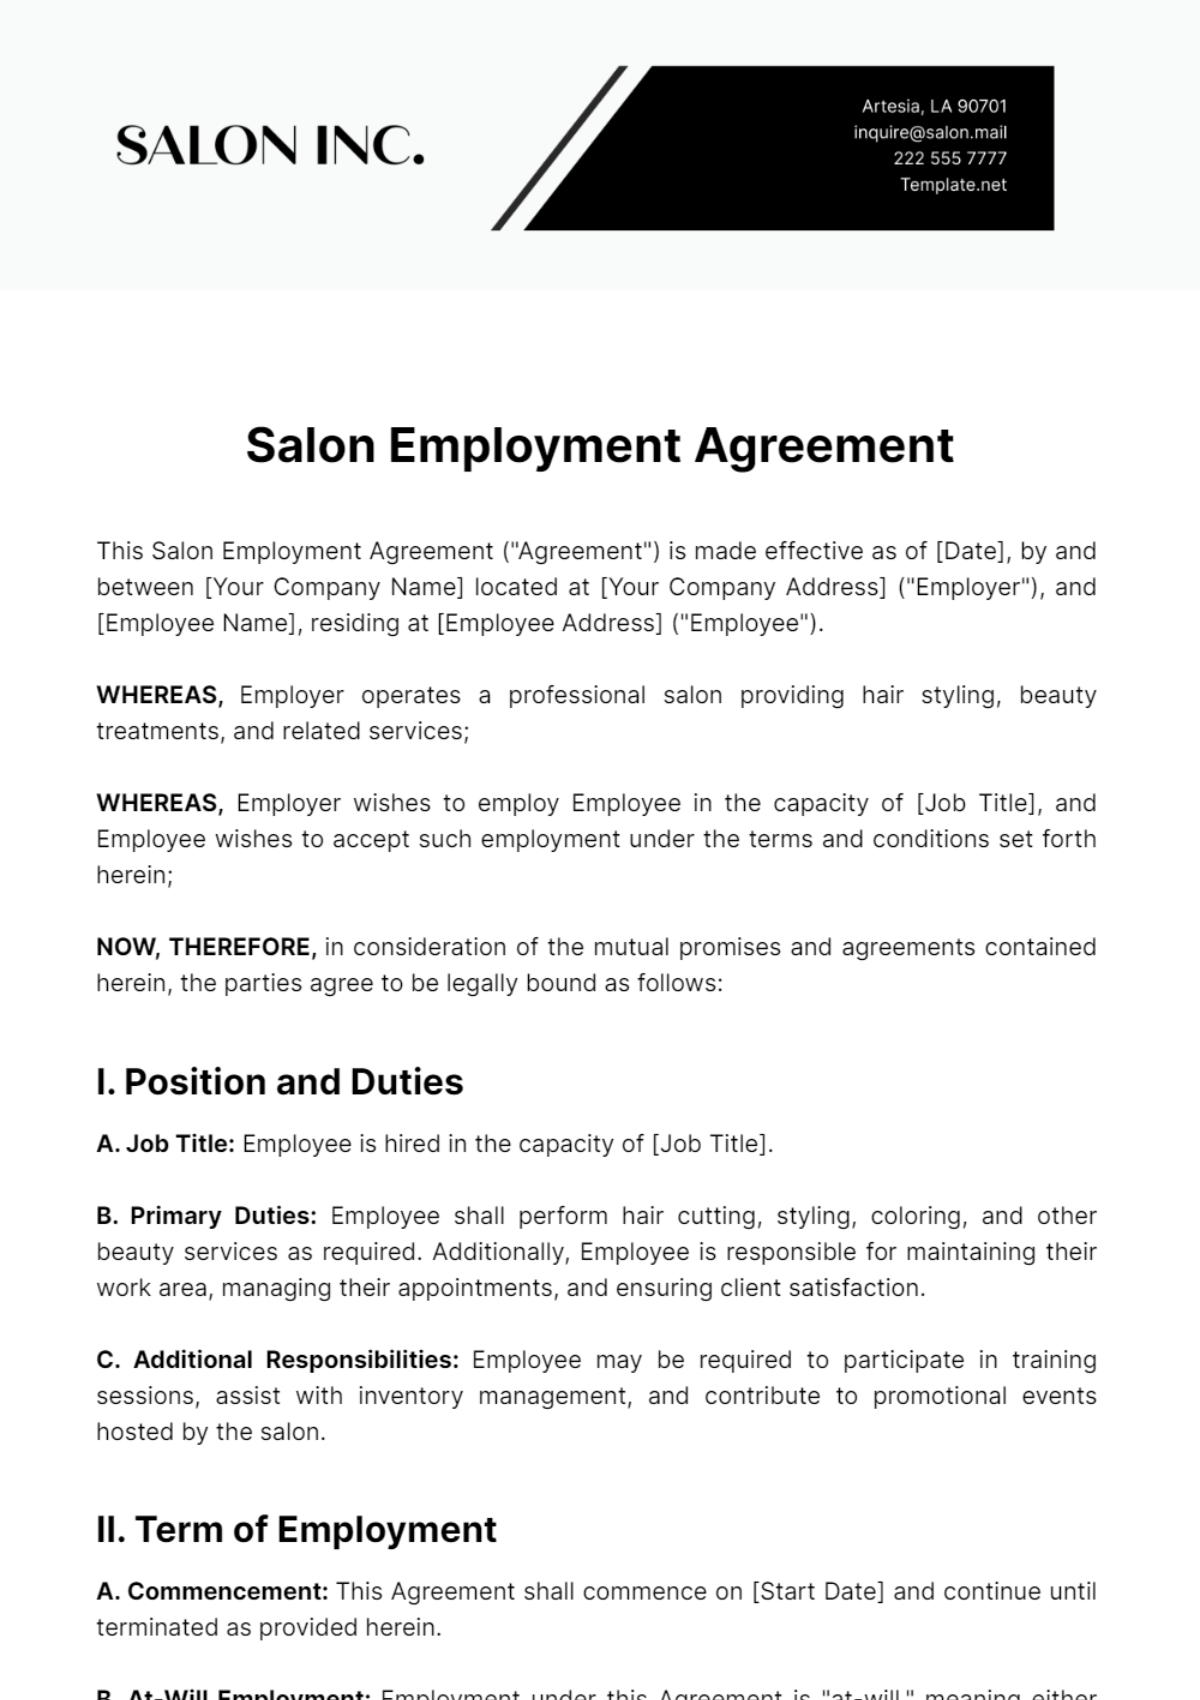 Salon Employment Agreement Template